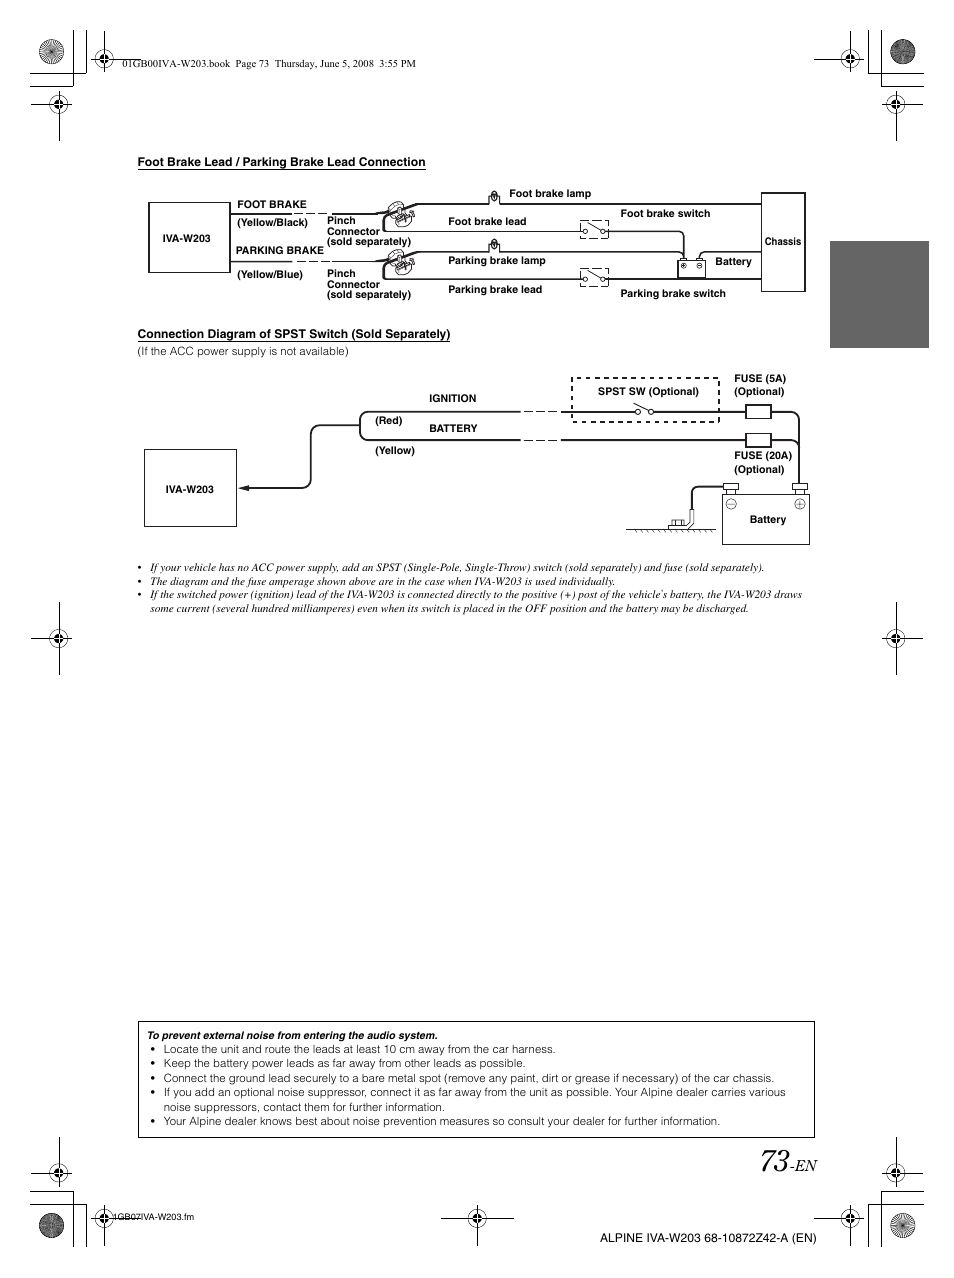 Wiring Diagram PDF: 2002 S500 Fuse Diagram